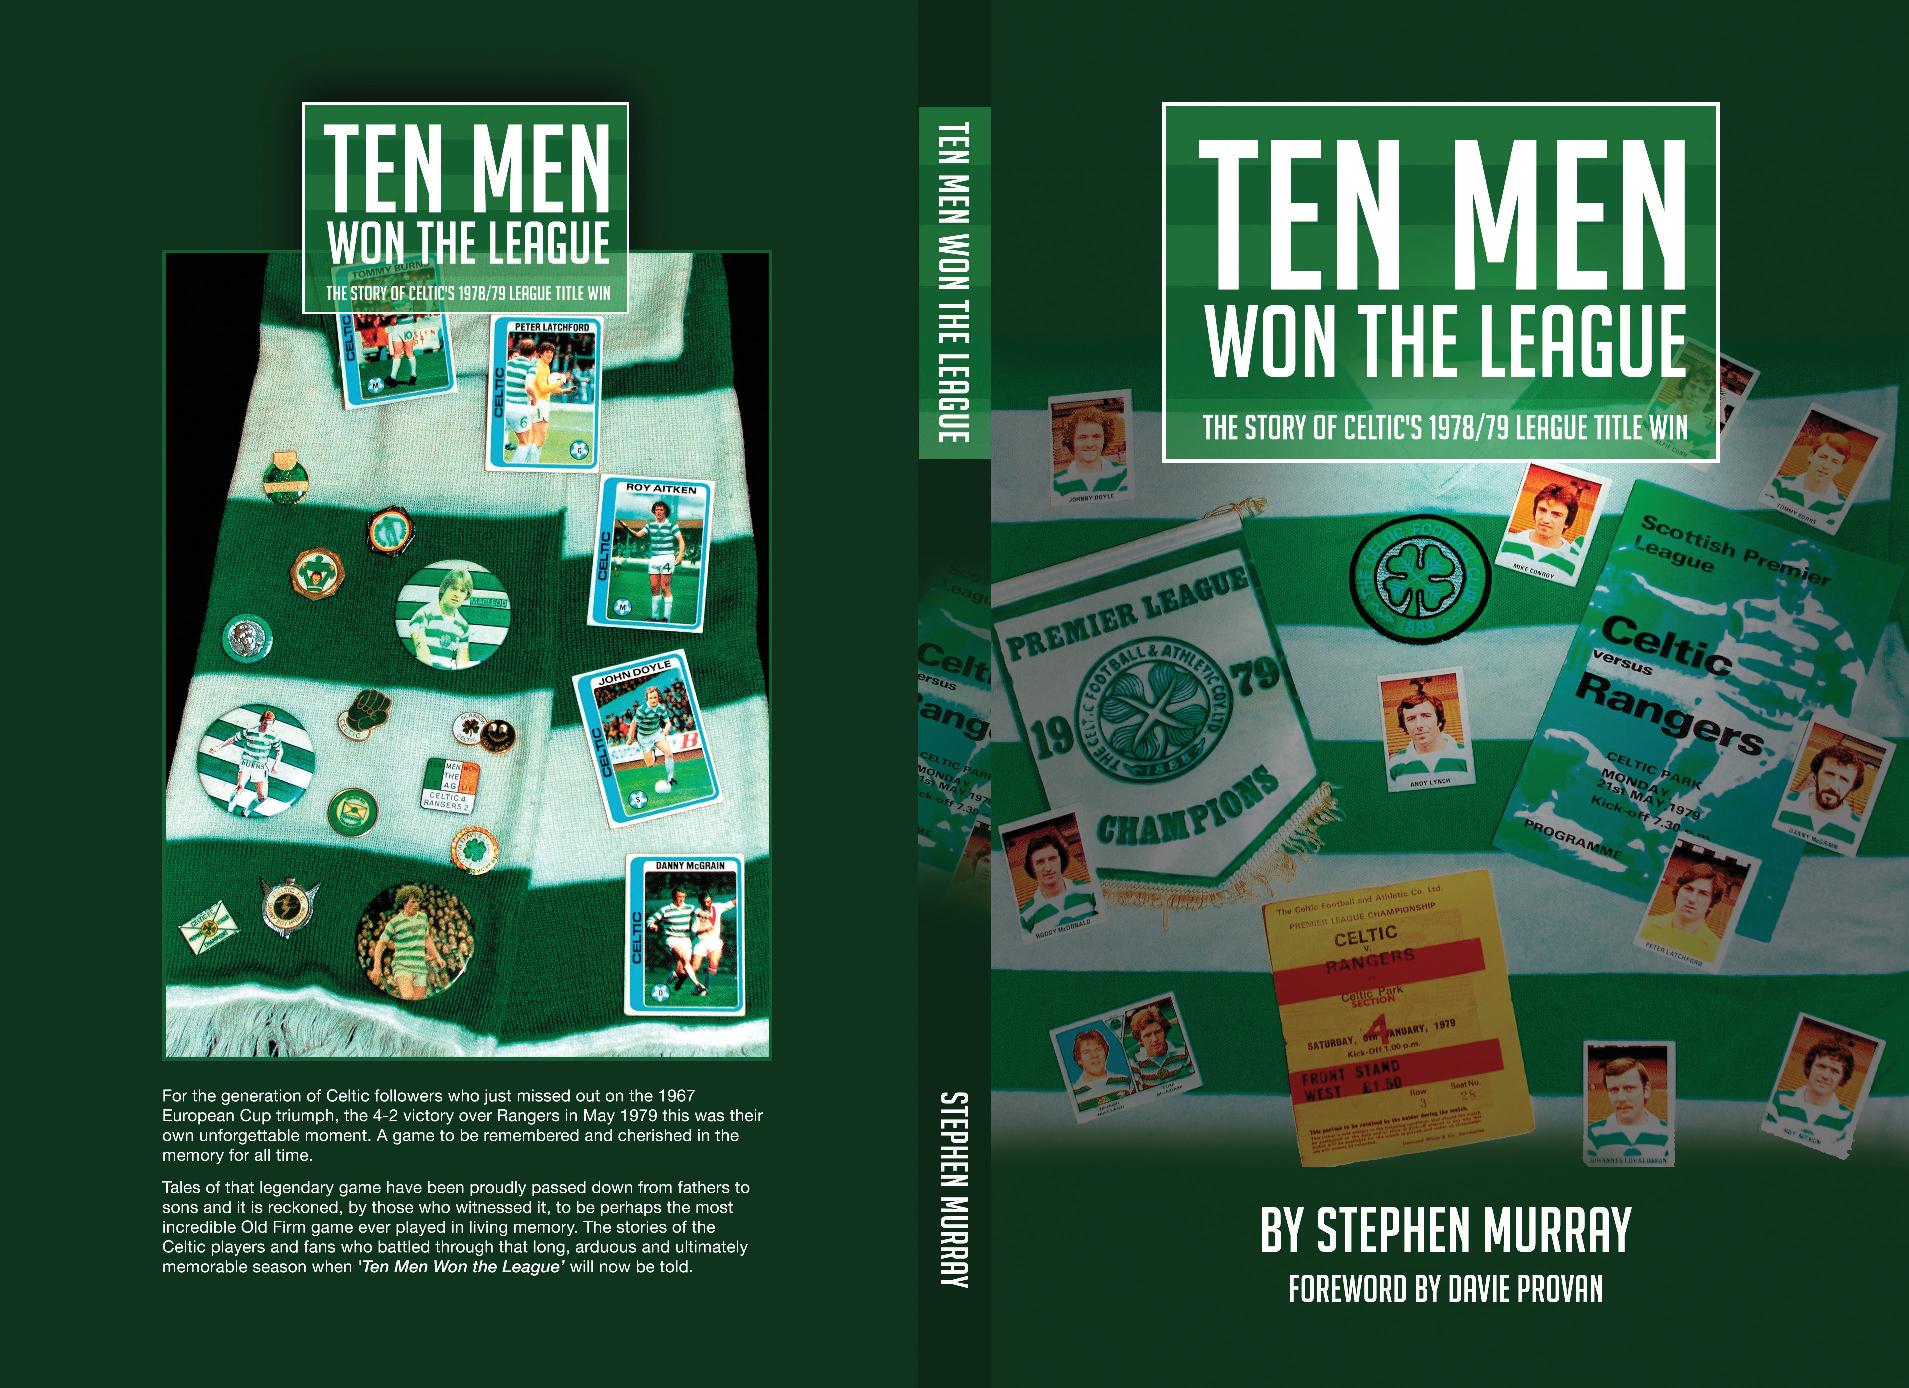 Ten Men Won The League book now launched